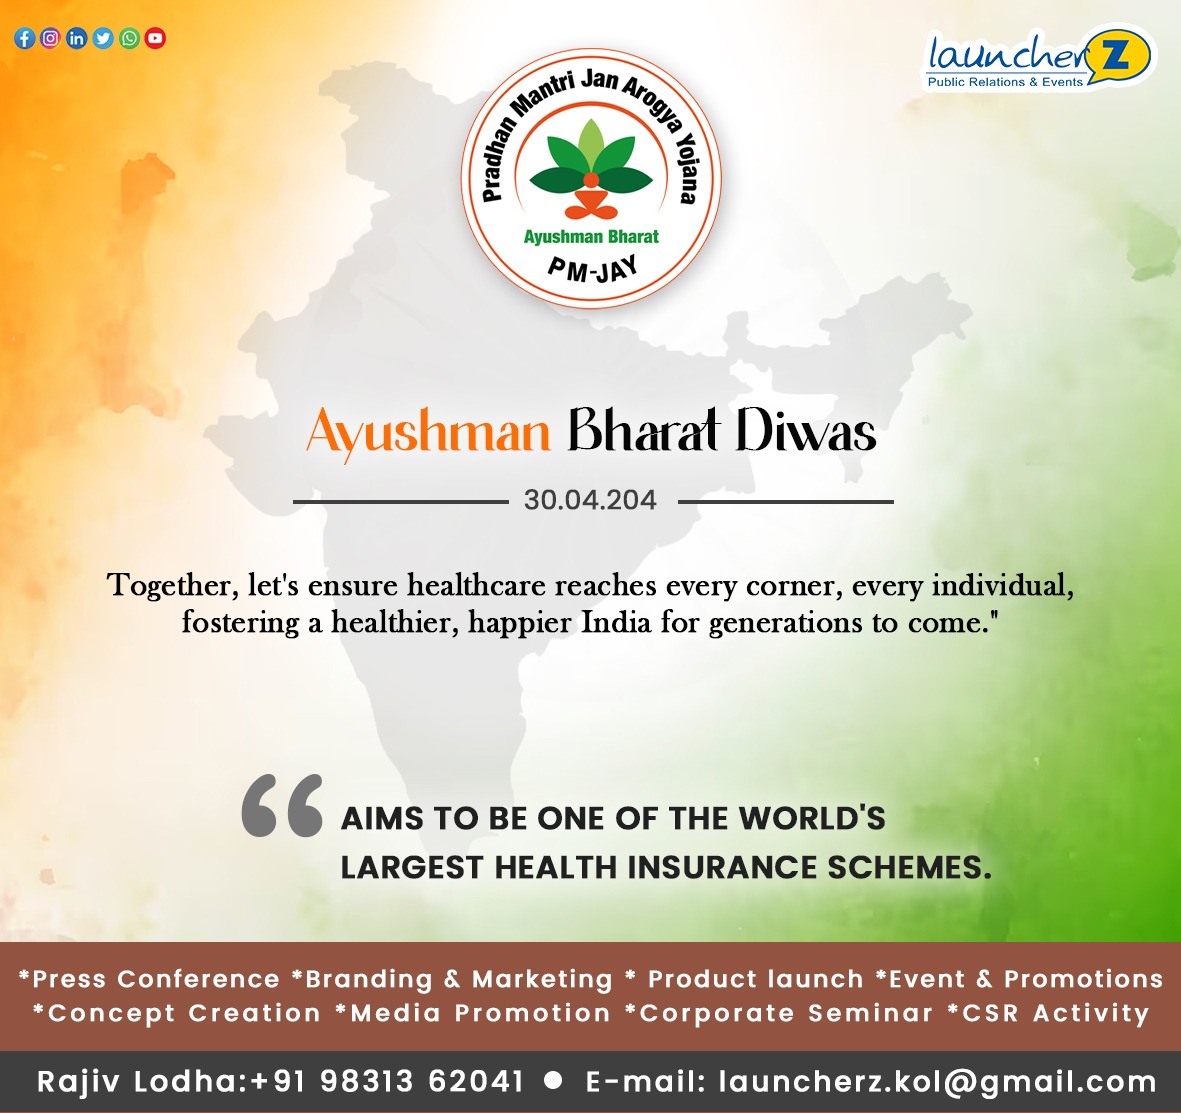 #AyushmanBharatDiwas
𝐋𝐞𝐭'𝐬 𝐮𝐧𝐢𝐭𝐞 𝐭𝐨 𝐞𝐧𝐬𝐮𝐫𝐞 𝐡𝐞𝐚𝐥𝐭𝐡𝐜𝐚𝐫𝐞 𝐫𝐞𝐚𝐜𝐡𝐞𝐬 𝐞𝐯𝐞𝐫𝐲 𝐜𝐨𝐫𝐧𝐞𝐫, 𝐞𝐯𝐞𝐫𝐲 𝐢𝐧𝐝𝐢𝐯𝐢𝐝𝐮𝐚𝐥, 𝐬𝐡𝐚𝐩𝐢𝐧𝐠 𝐚 𝐡𝐞𝐚𝐥𝐭𝐡𝐢𝐞𝐫, 𝐡𝐚𝐩𝐩𝐢𝐞𝐫 𝐈𝐧𝐝𝐢𝐚 𝐟𝐨𝐫 𝐠𝐞𝐧𝐞𝐫𝐚𝐭𝐢𝐨𝐧𝐬 𝐭𝐨 𝐜𝐨𝐦𝐞. 
#BetterIndia